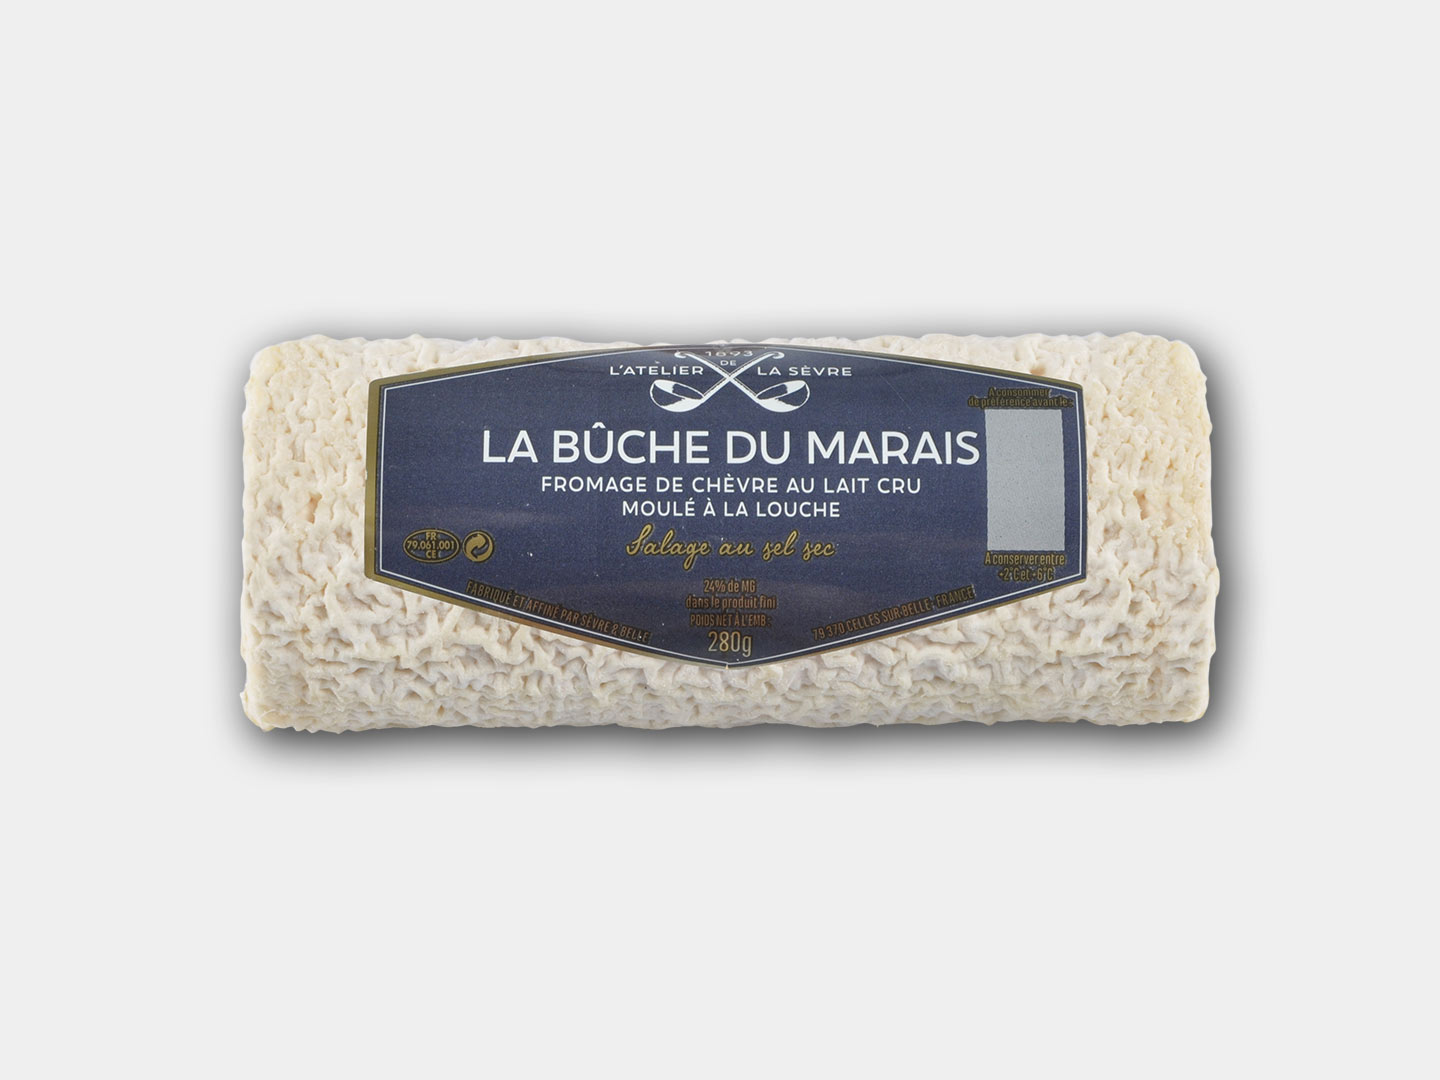 La bûche du Marais 280g - fromage de chèvre - lait cru - moulé louche - Atelier de la sèvre